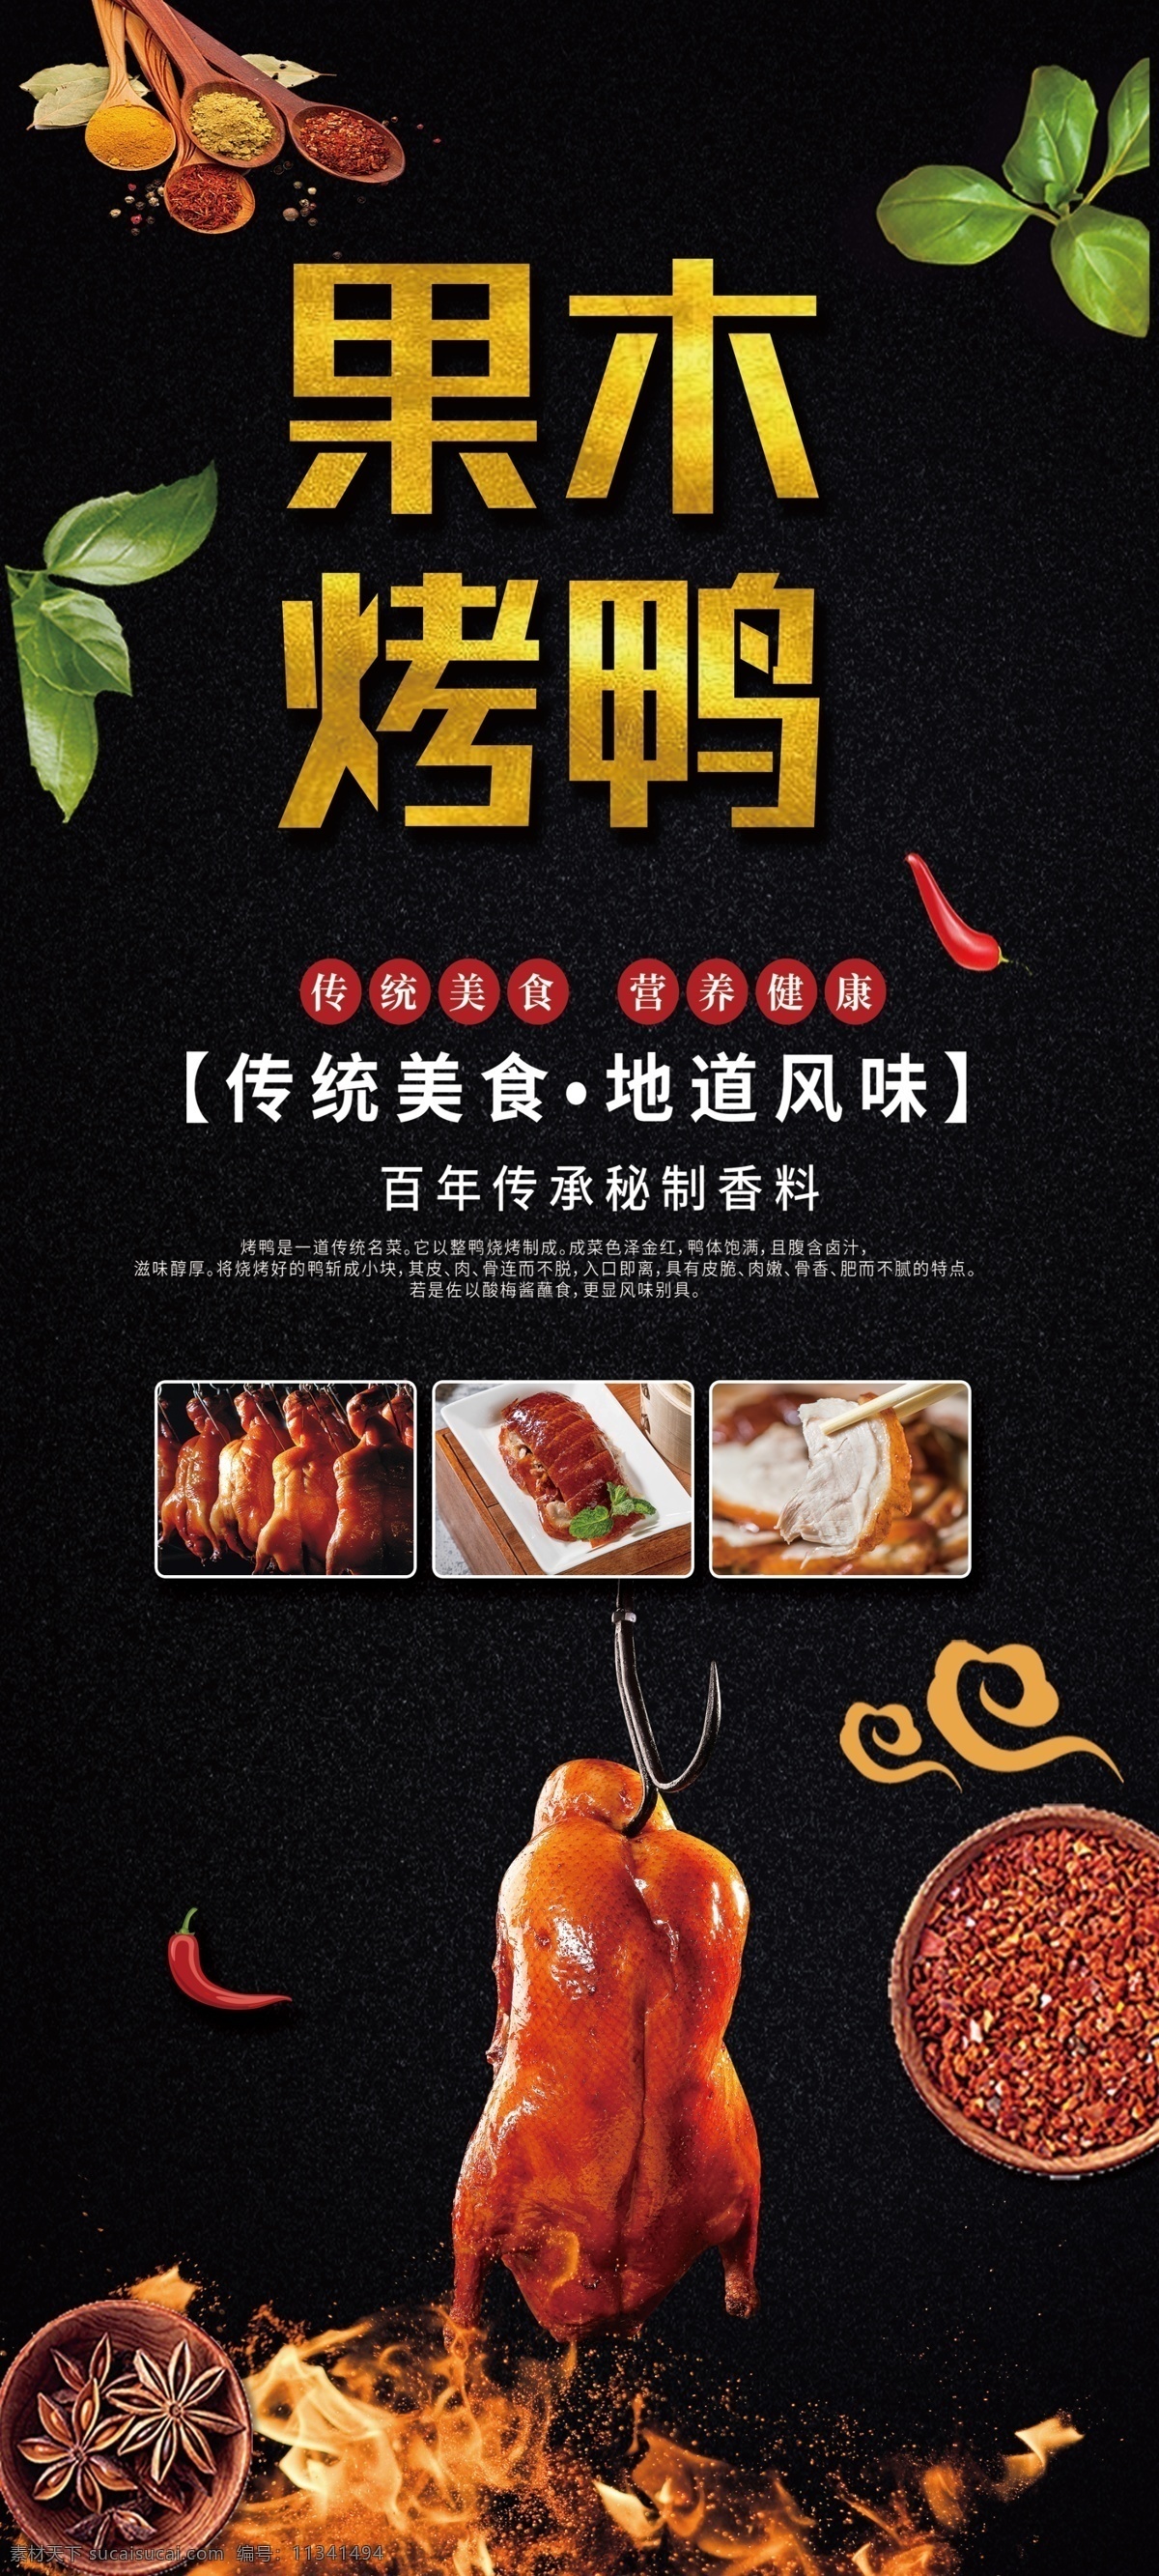 果木烤鸭图片 烤鸭 火焰 灯笼 北京烤鸭 果木烤鸭 展板模板